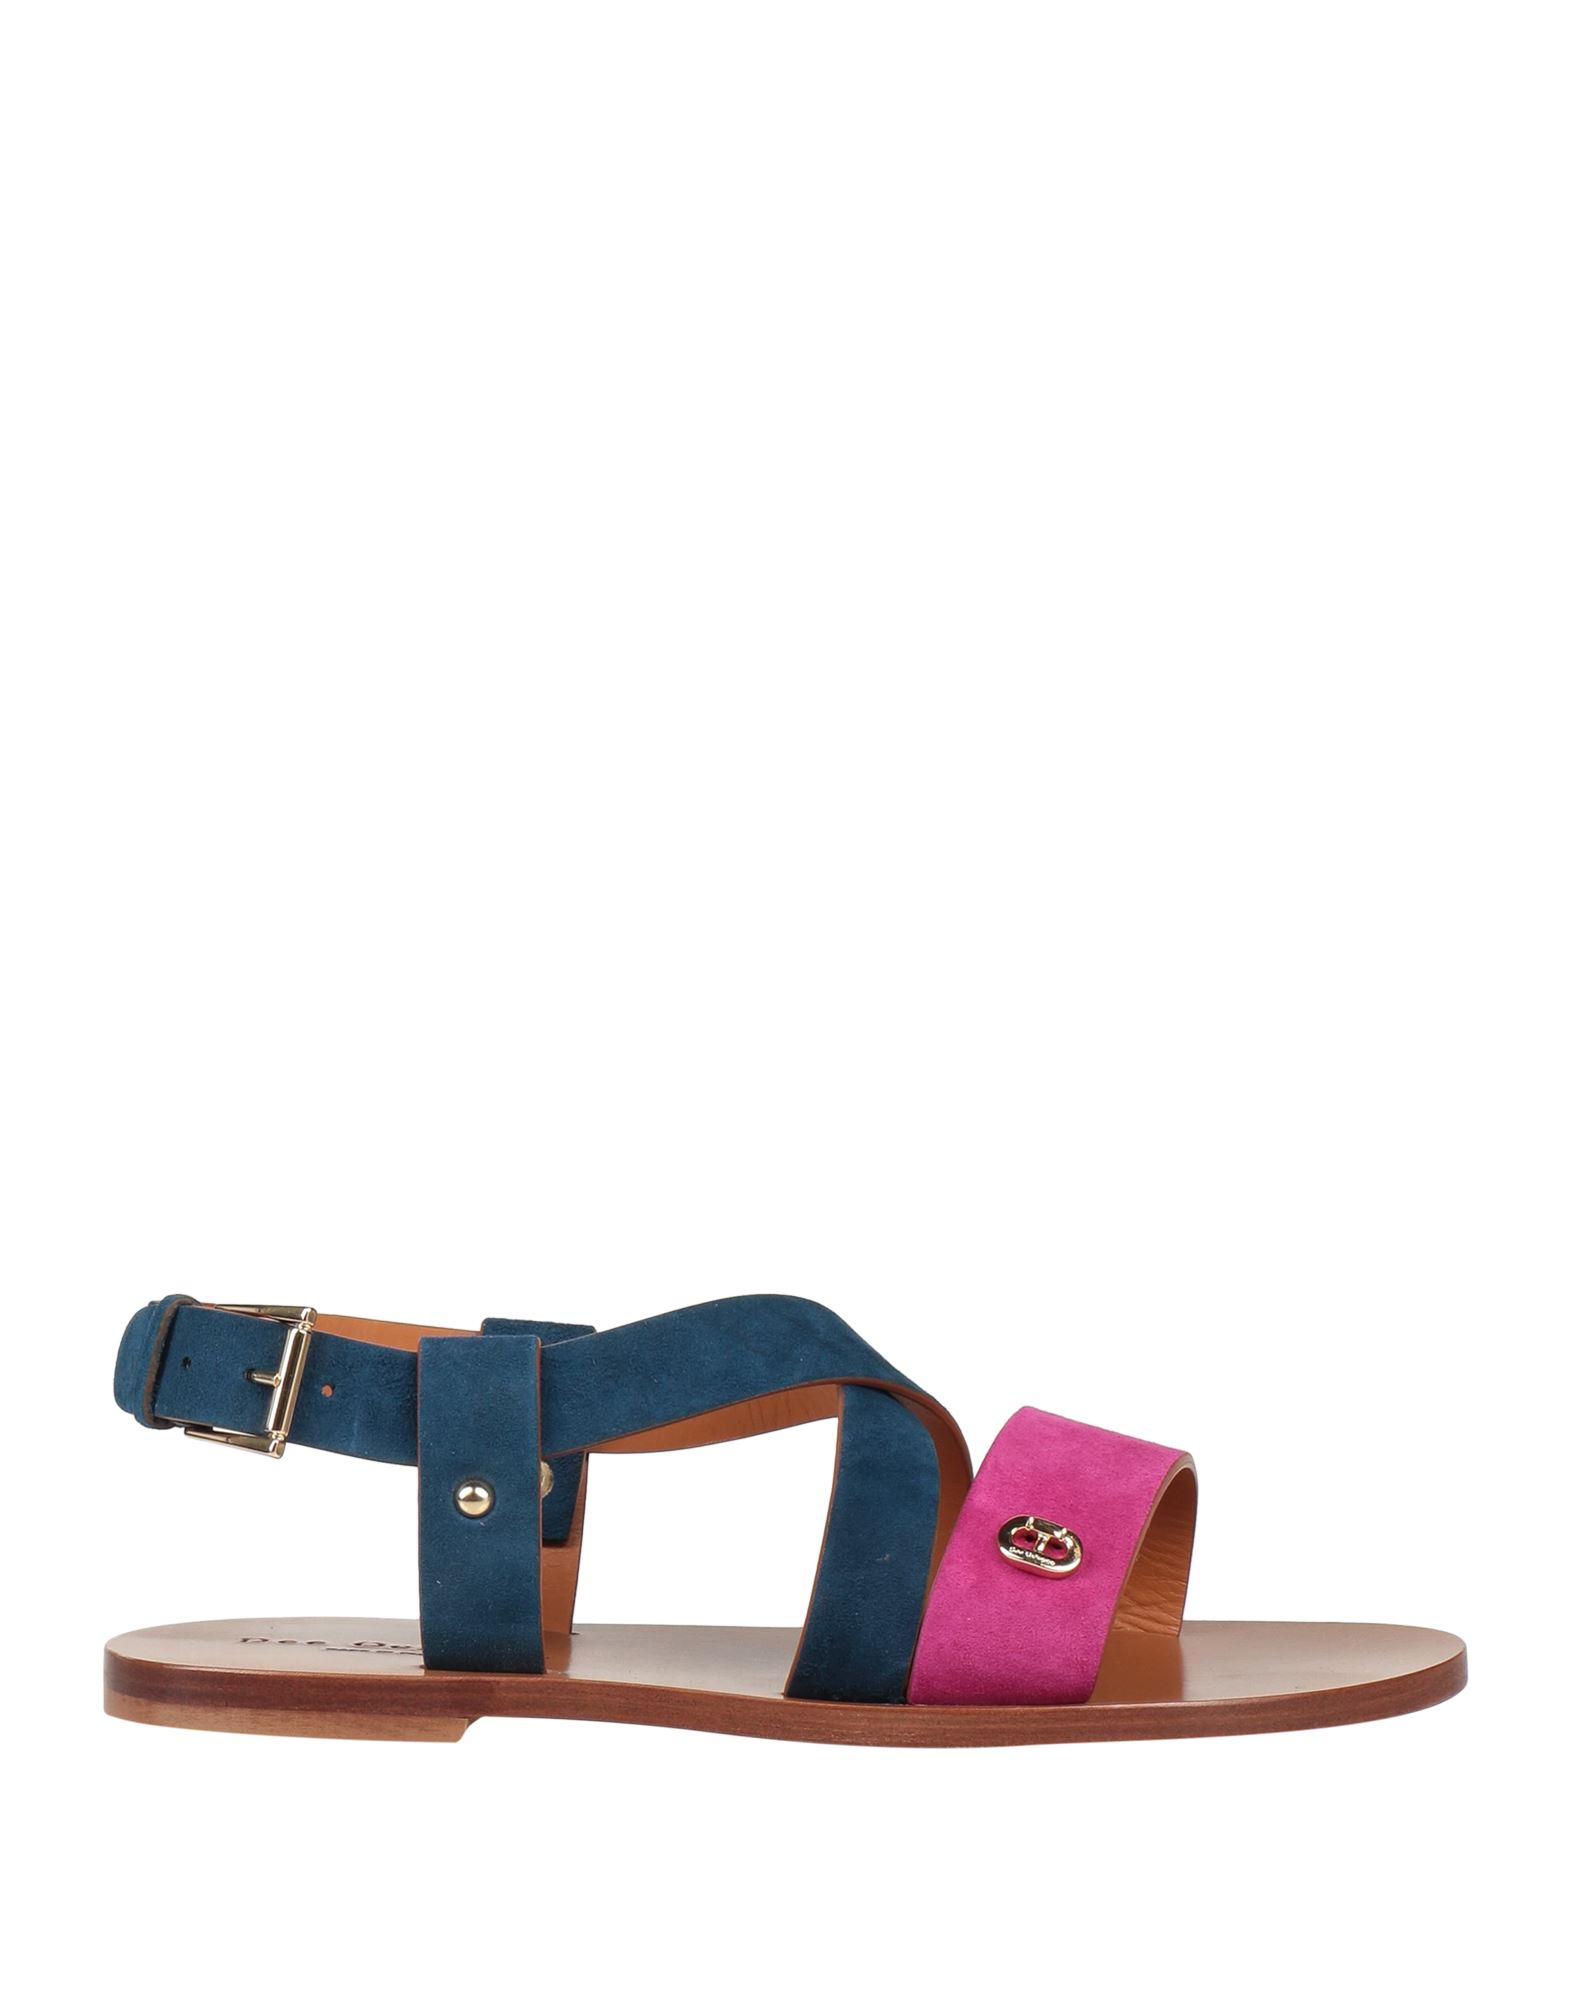 Dee Ocleppo Sandals In Pink